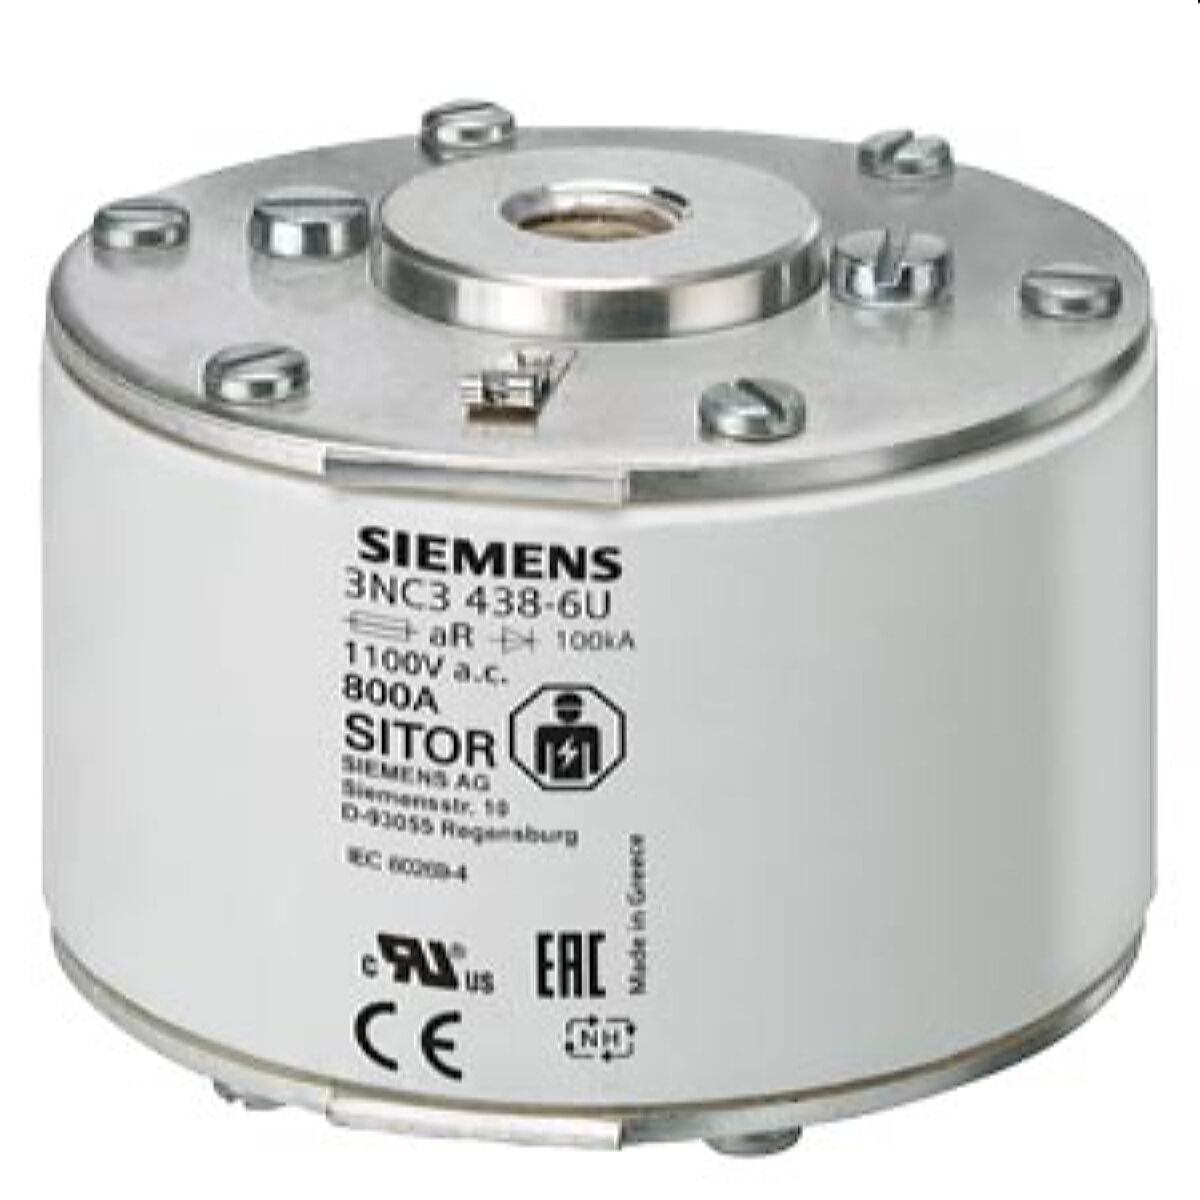 Siemens SITOR-Sicherungseinsatz für Halbleiterschutz 800A aR 1000V AC 3NC3338-6U